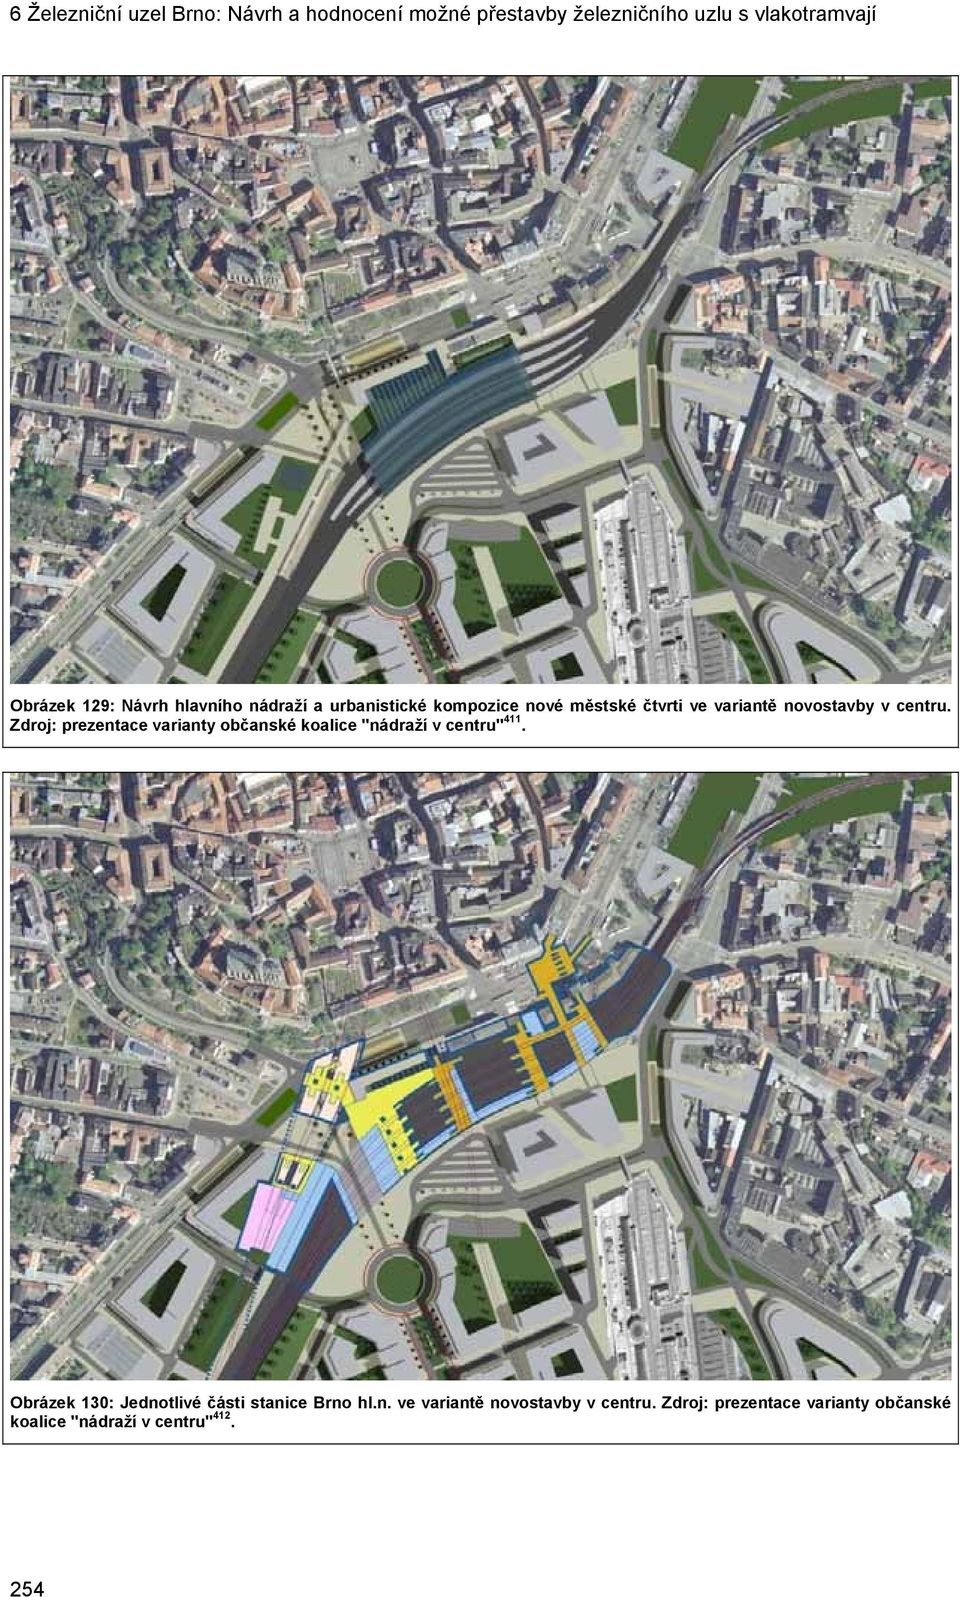 Zdroj: prezentace varianty občanské koalice "nádraží v centru" 411.